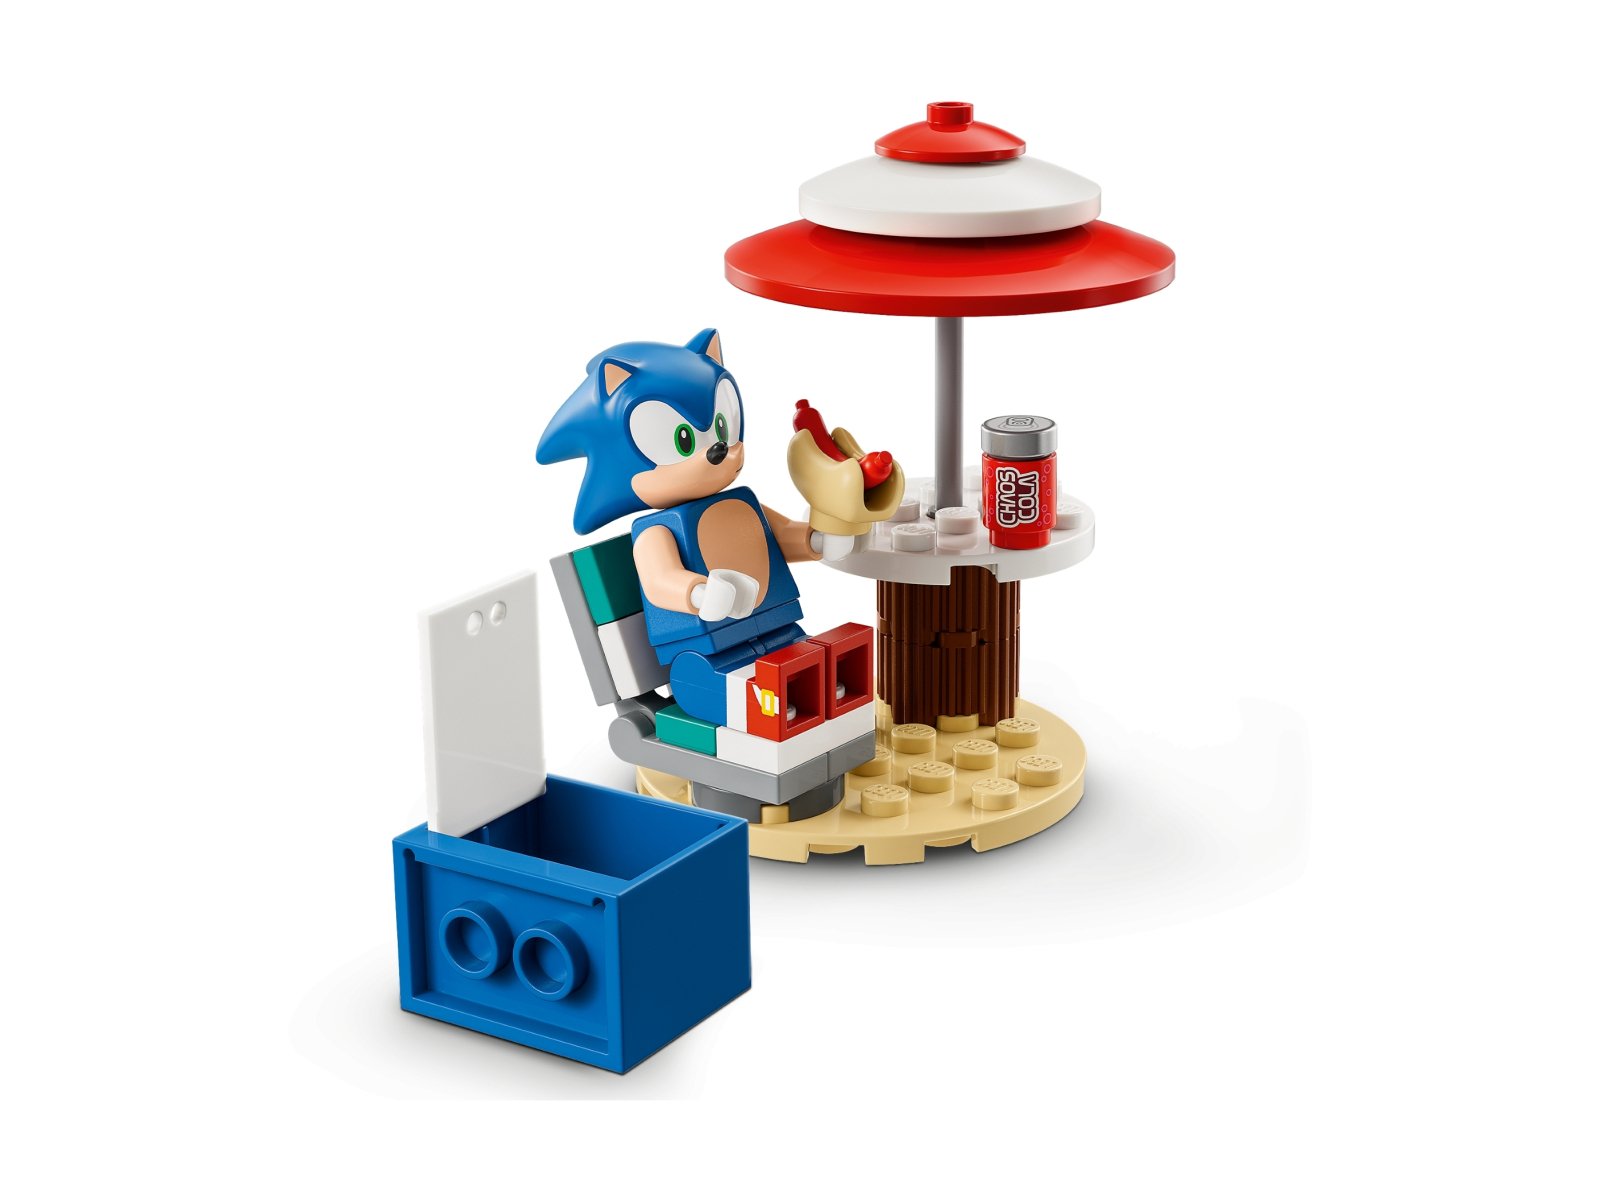 LEGO Sonic the Hedgehog Sonic — wyzwanie z pędzącą kulą 76990